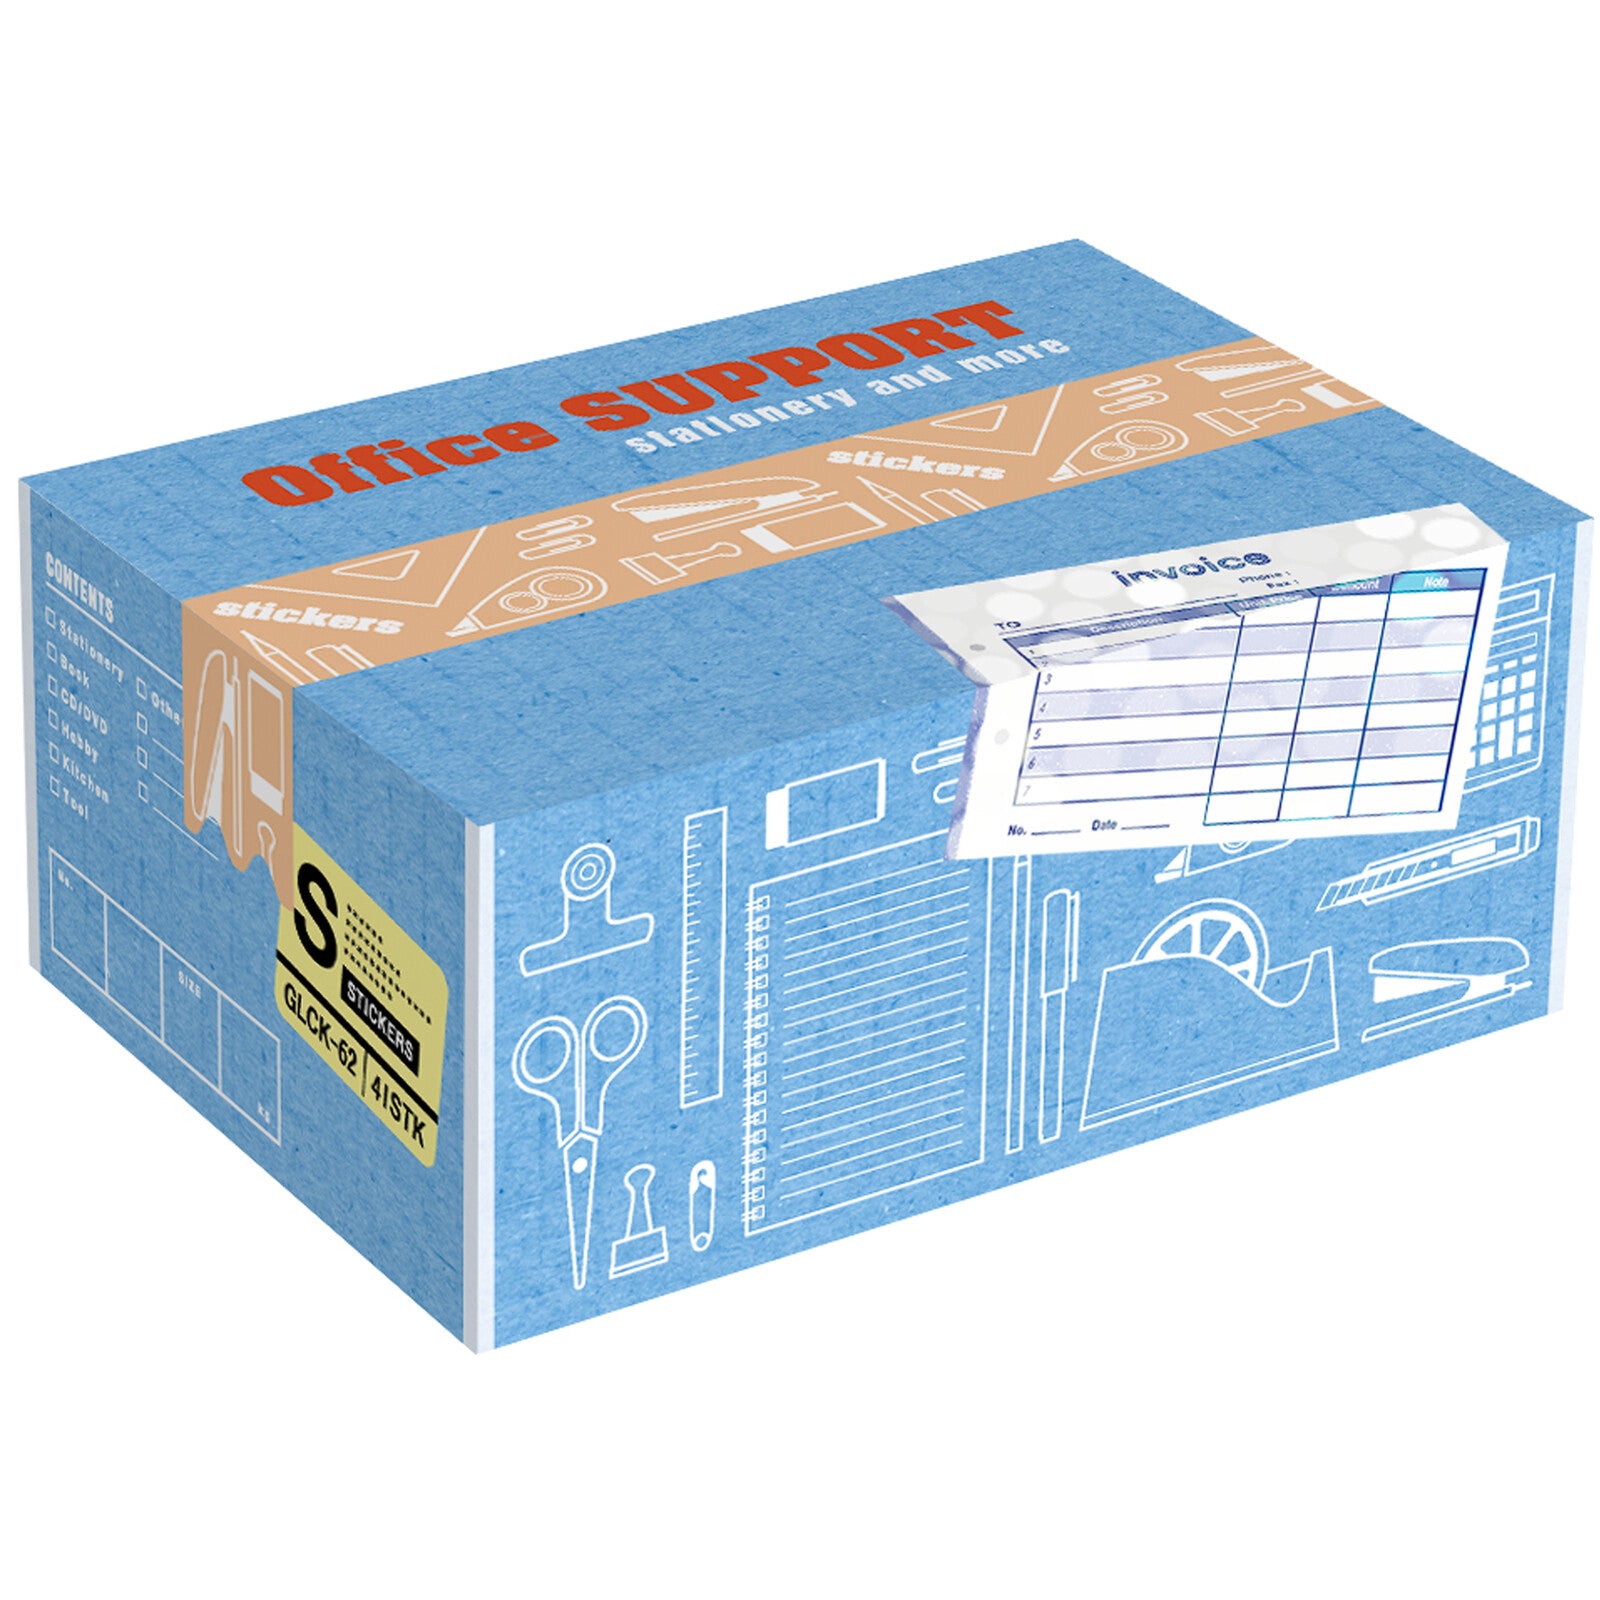 Miniature Shipping Box Flake Sticker Set - Grocery Store – Saiko Stationery